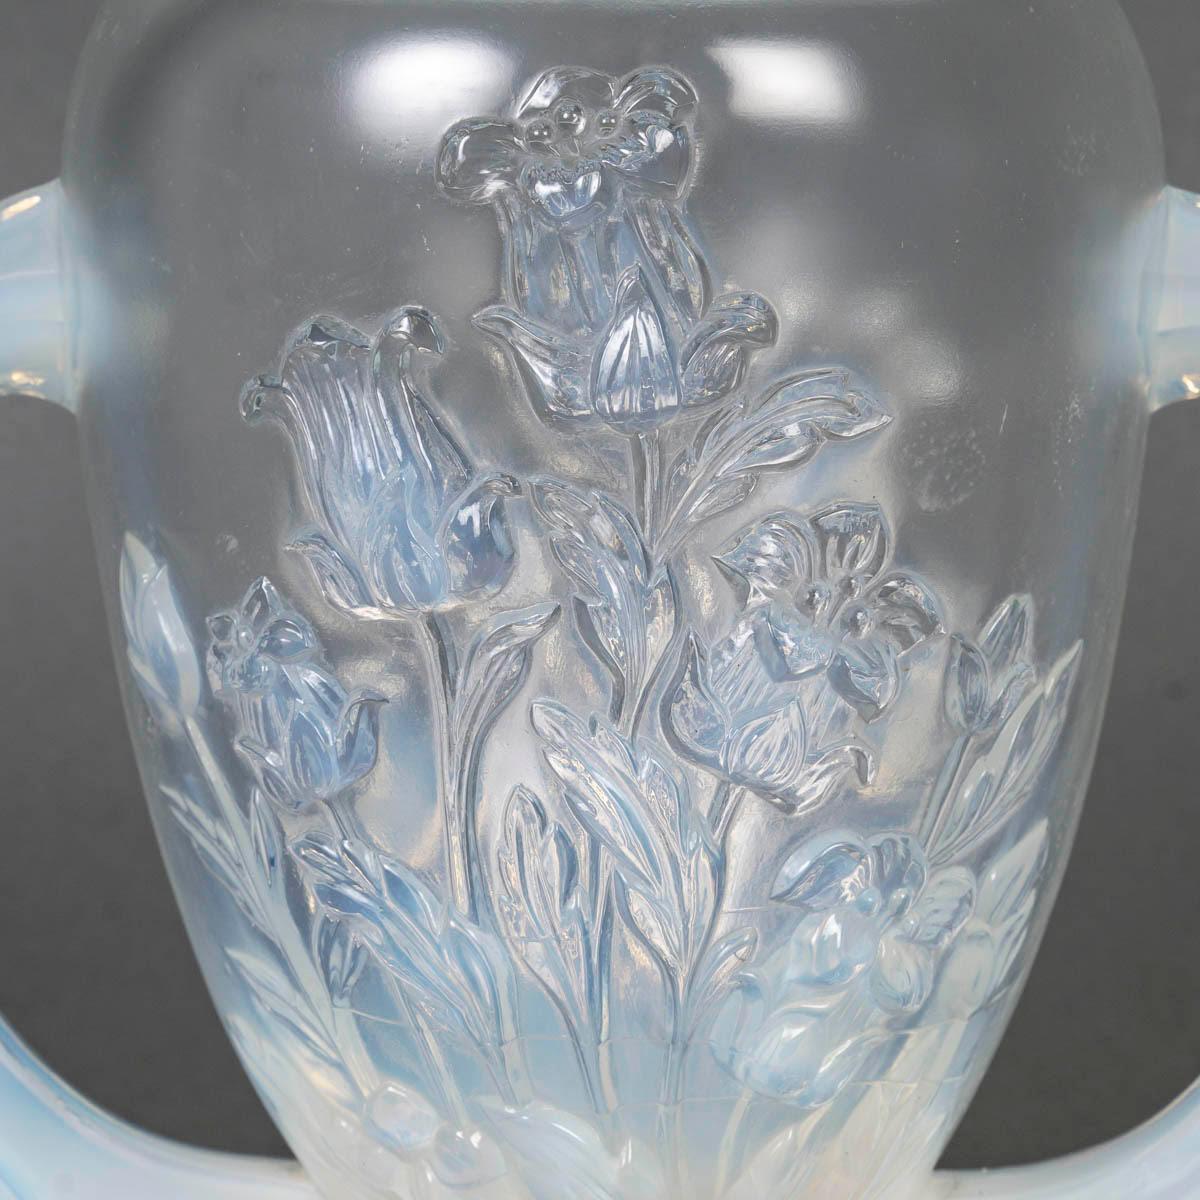 Vase en verre opalescent de Verlys, début du 20e siècle.

Vase en verre opalescent Verlys sur une base de douche, début du 20e siècle.
H : 20cm, L : 25cm, P : 14cm